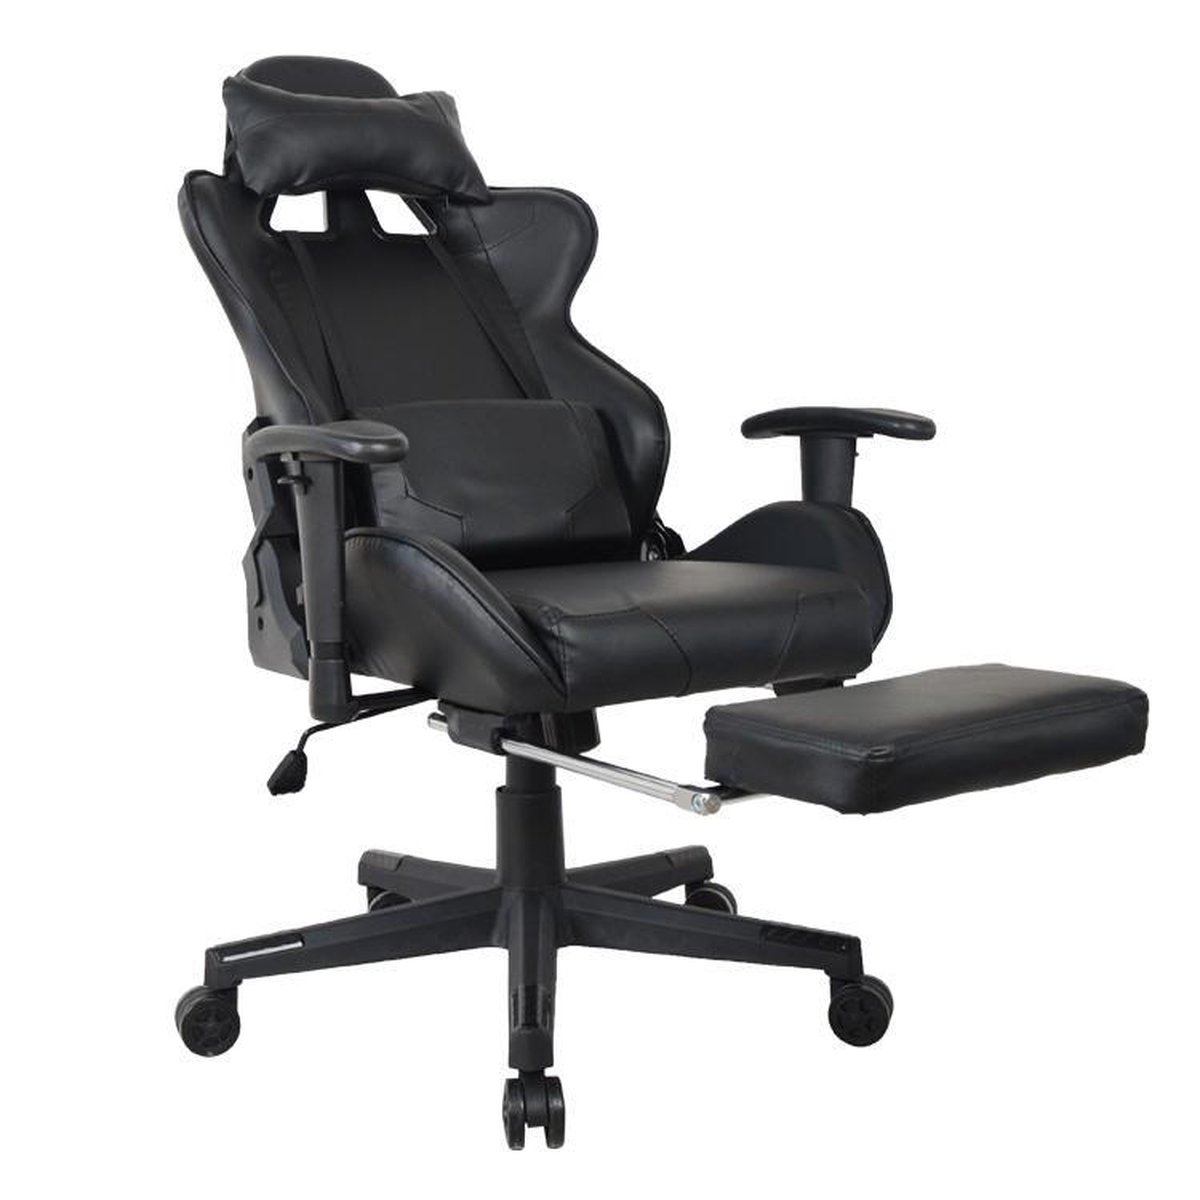 Gamestoel Thomas met voetsteun - bureaustoel racing stijl - verstelbaar - zwart